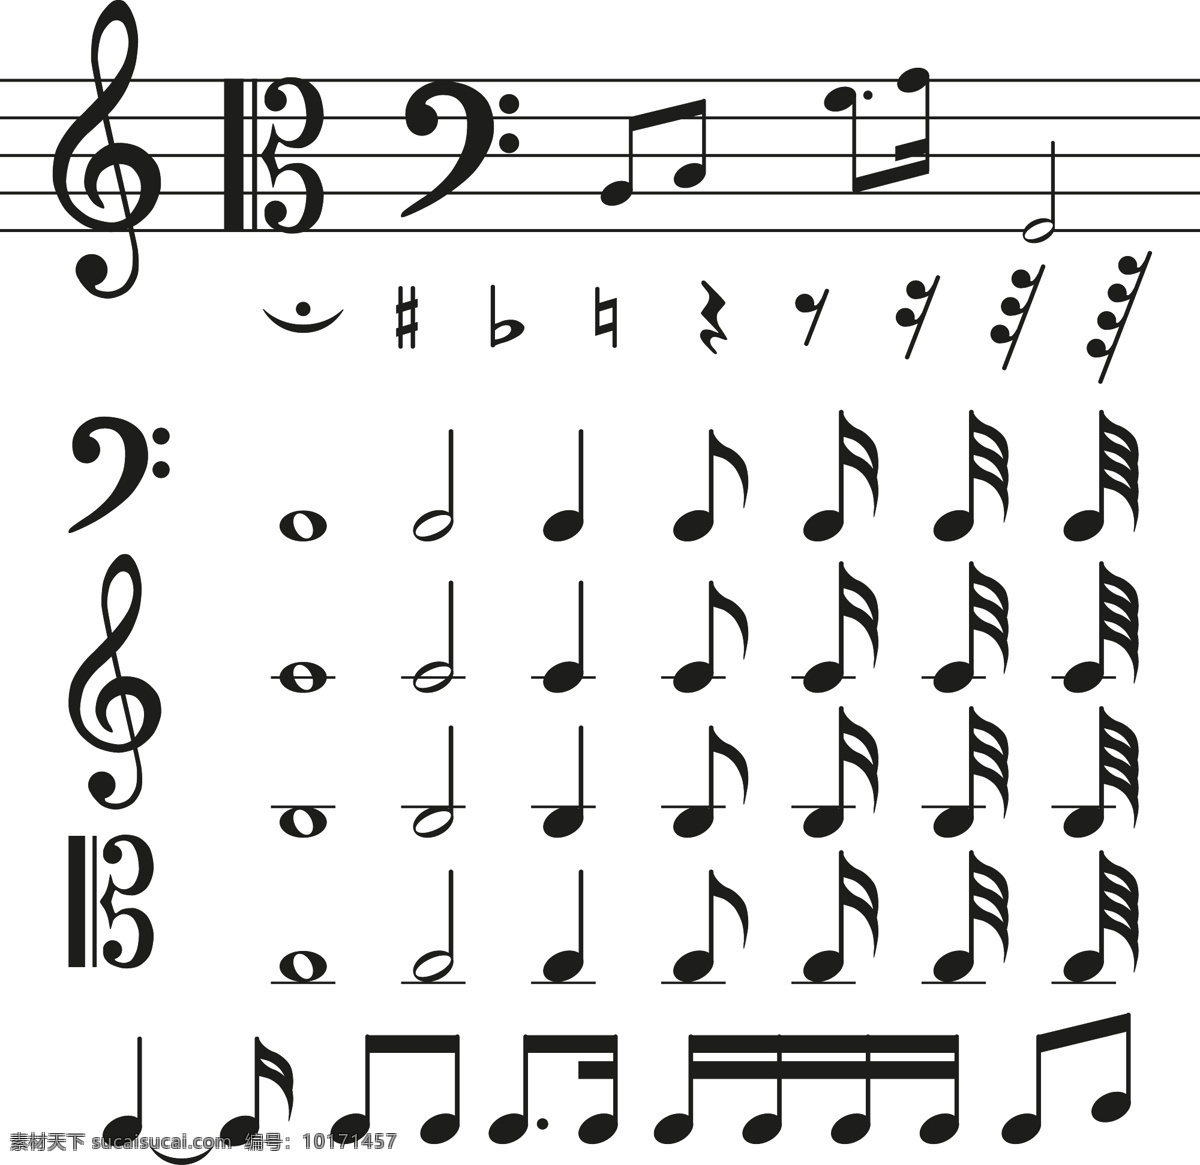 各种 音乐 符号 矢量 格式 音符 乐谱 矢量图 高清图片